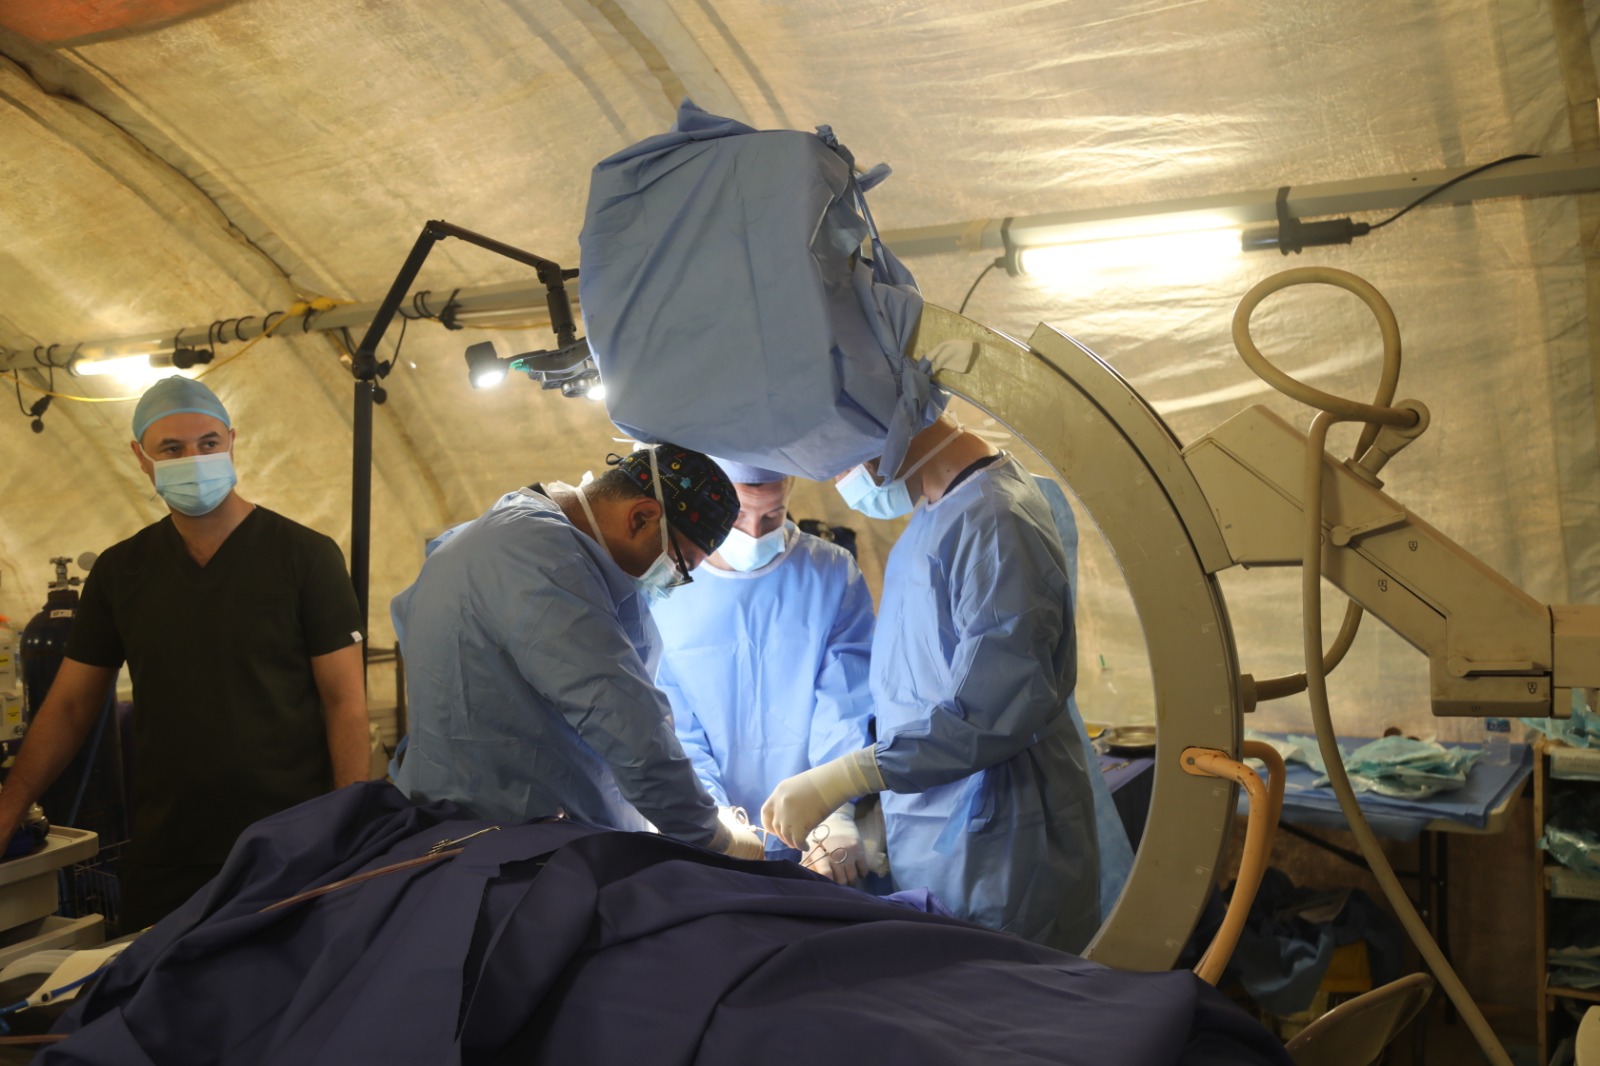 المستشفى الميداني الأردني “جنوب غزة 3” يجري عملية جراحية نوعية